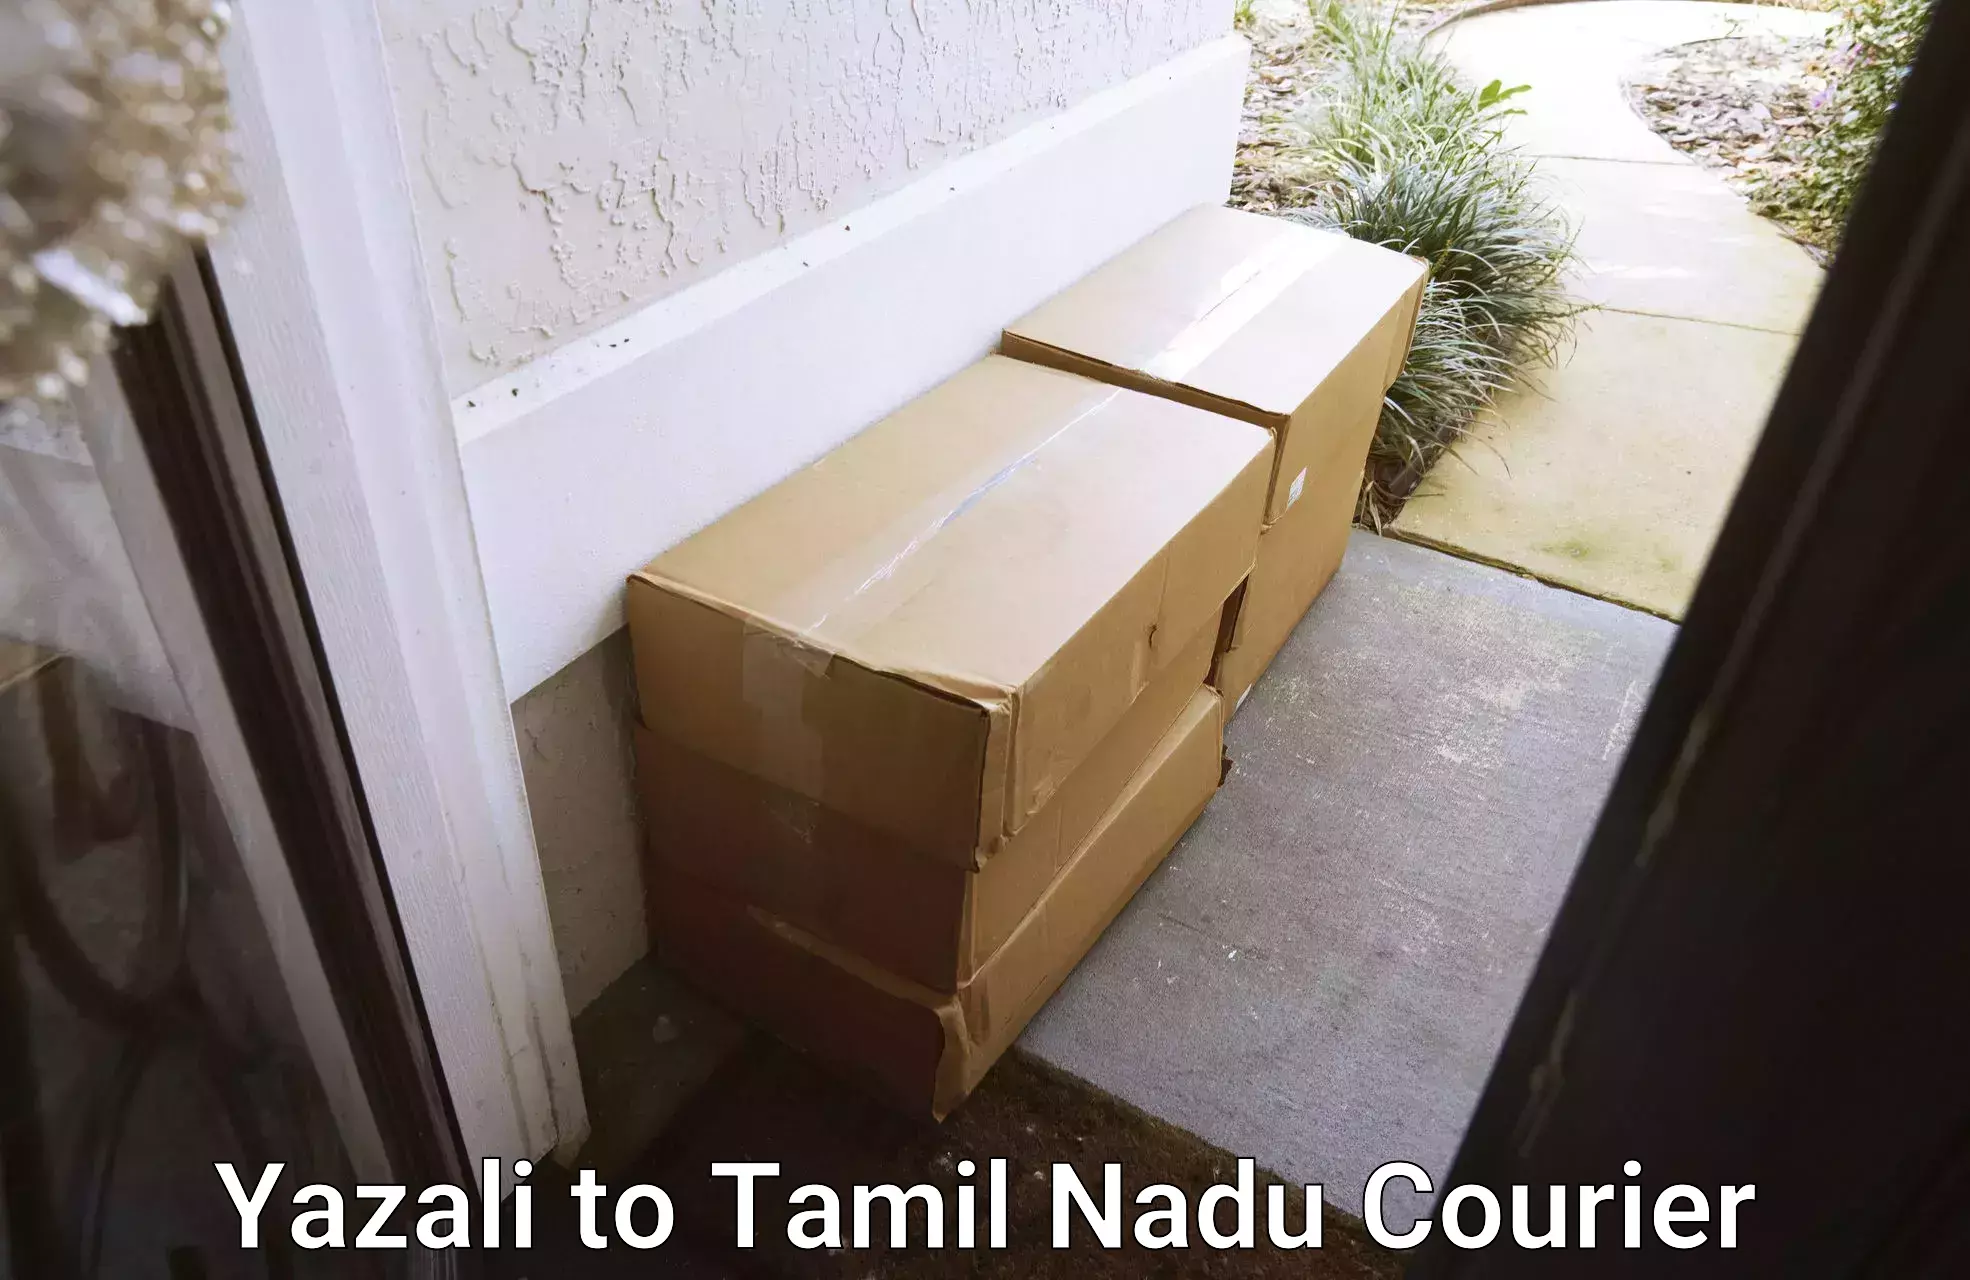 Reliable delivery network Yazali to Rajapalayam